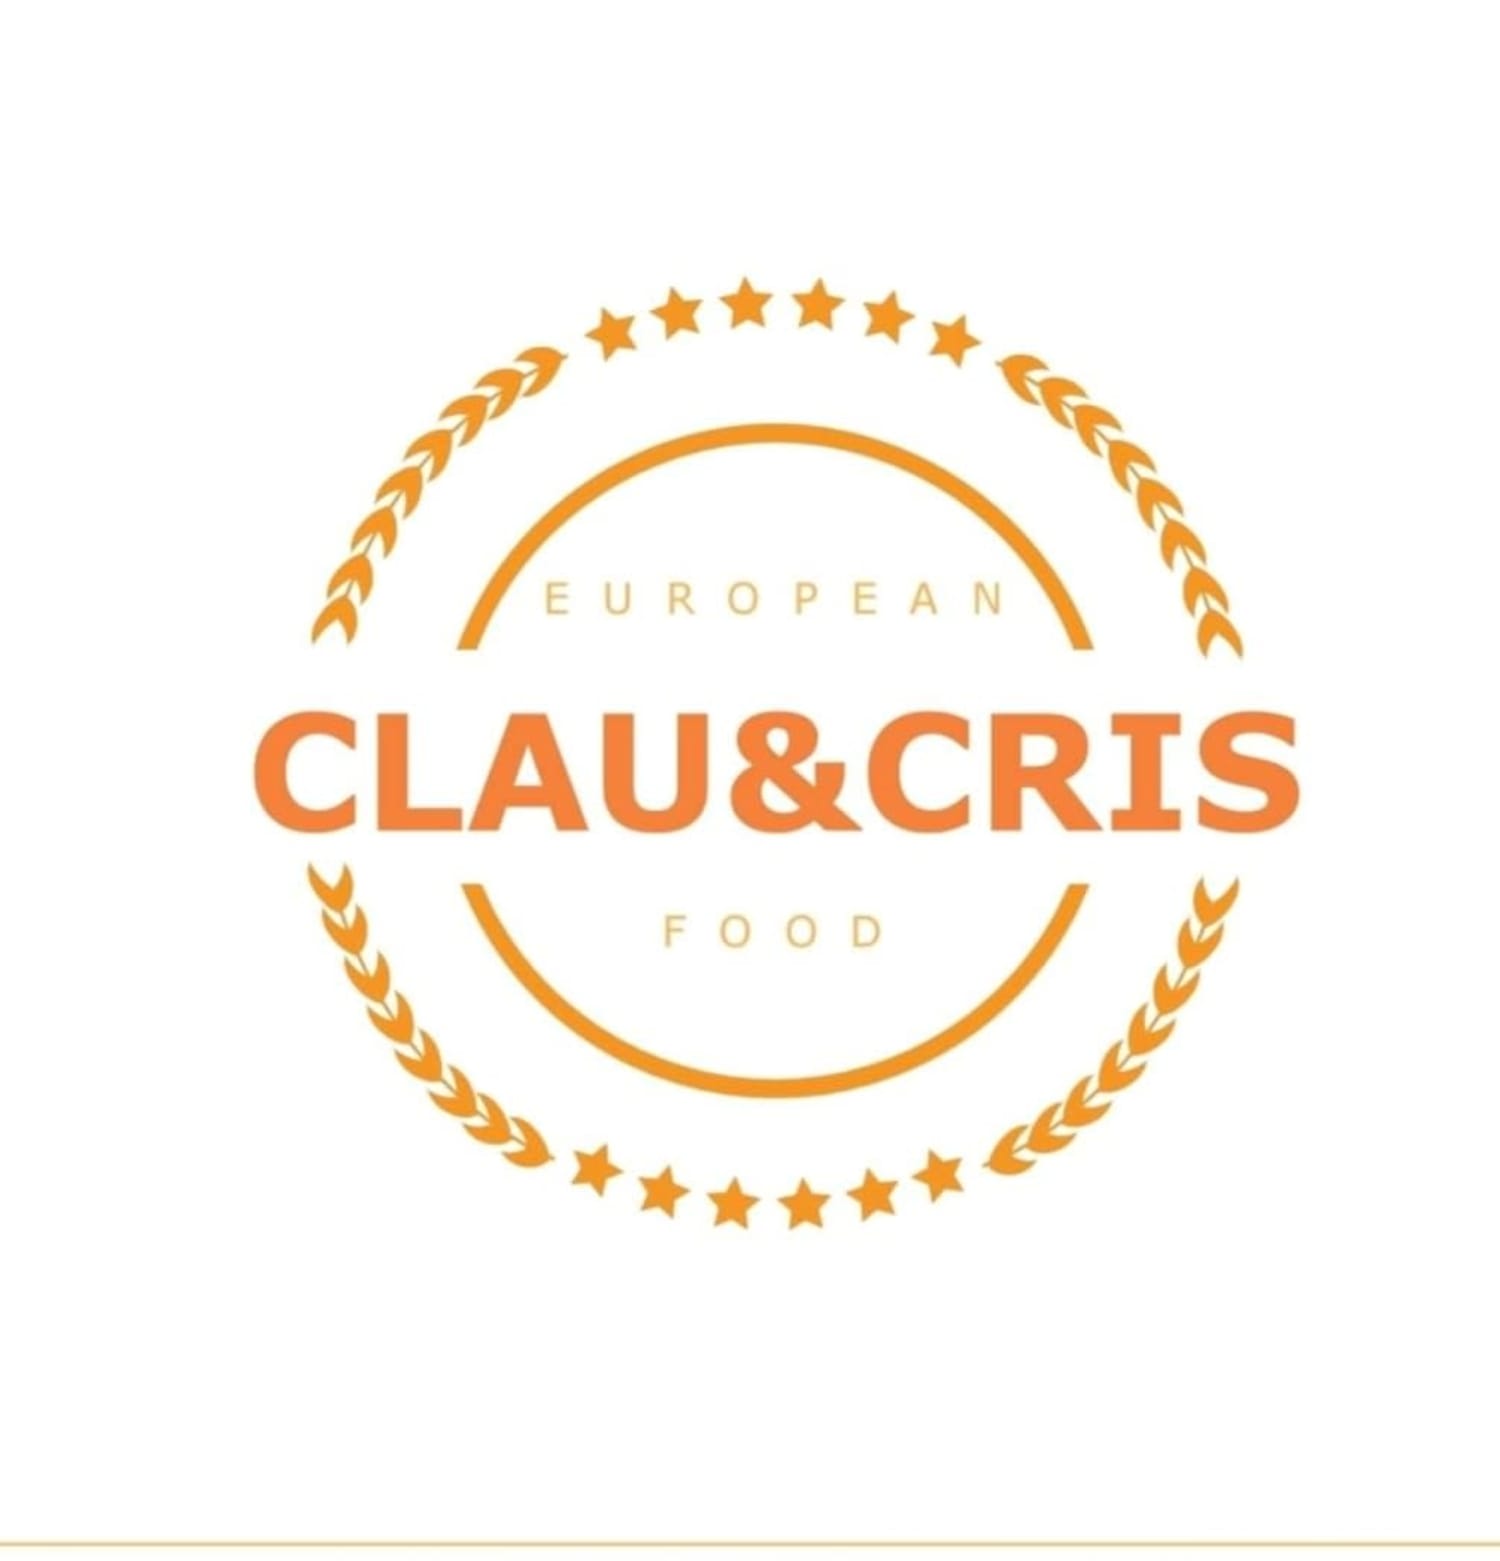 Clau&Cris European Foods